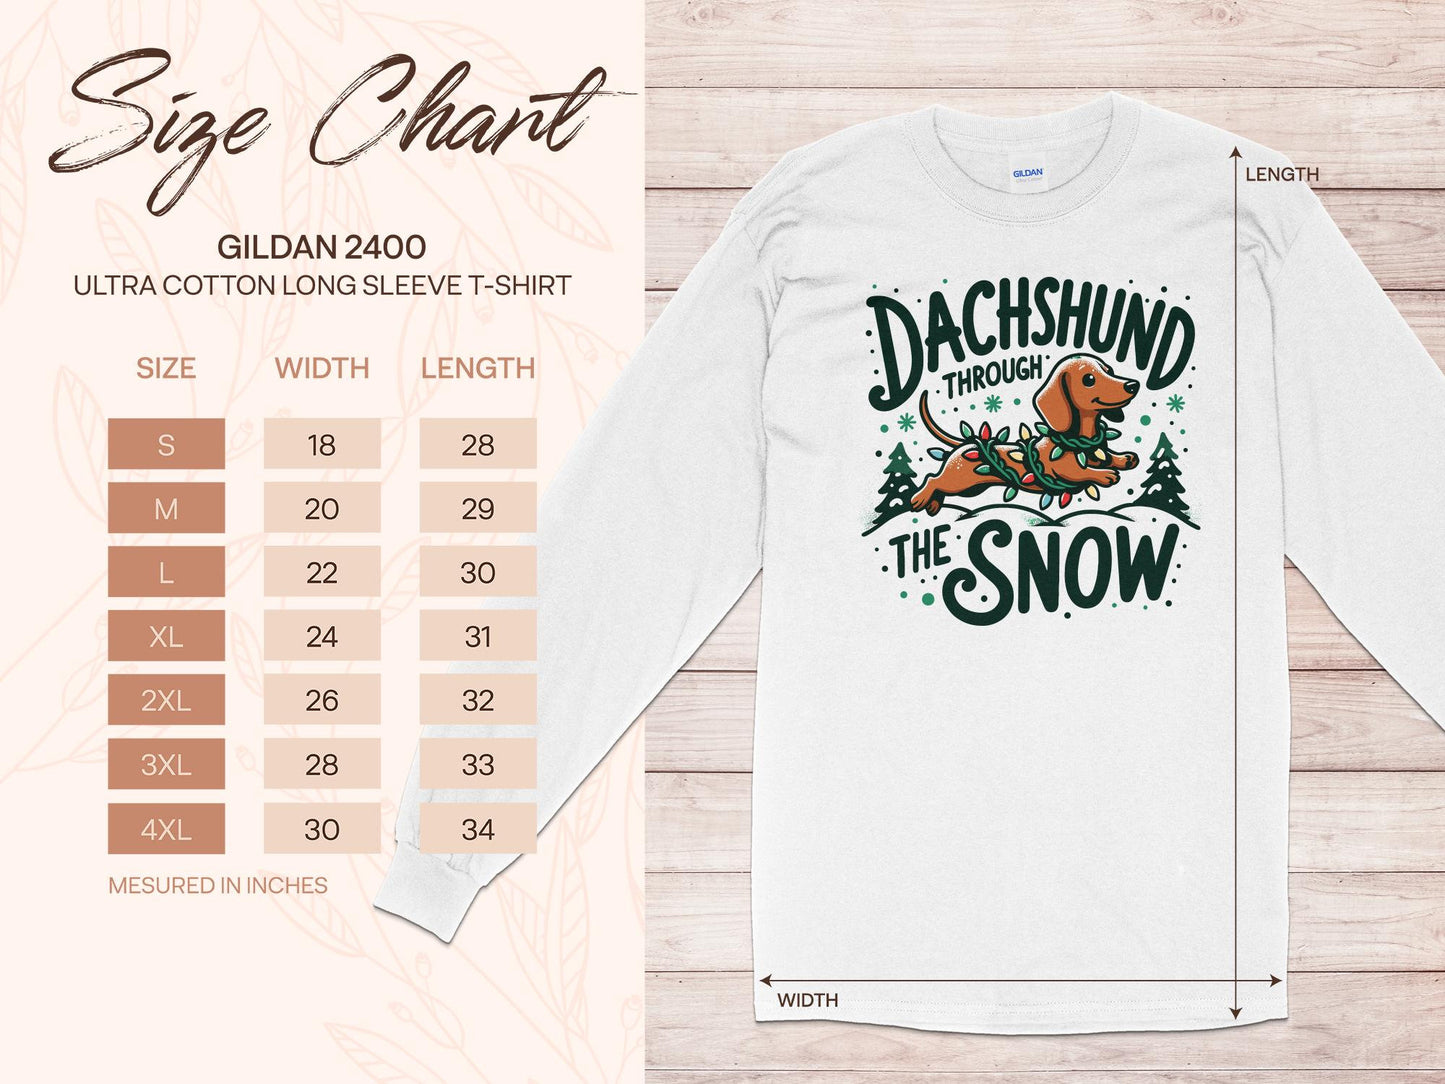 Dachshund Through the Snow Sweatshirt - A Wiener Wonderland Adventure